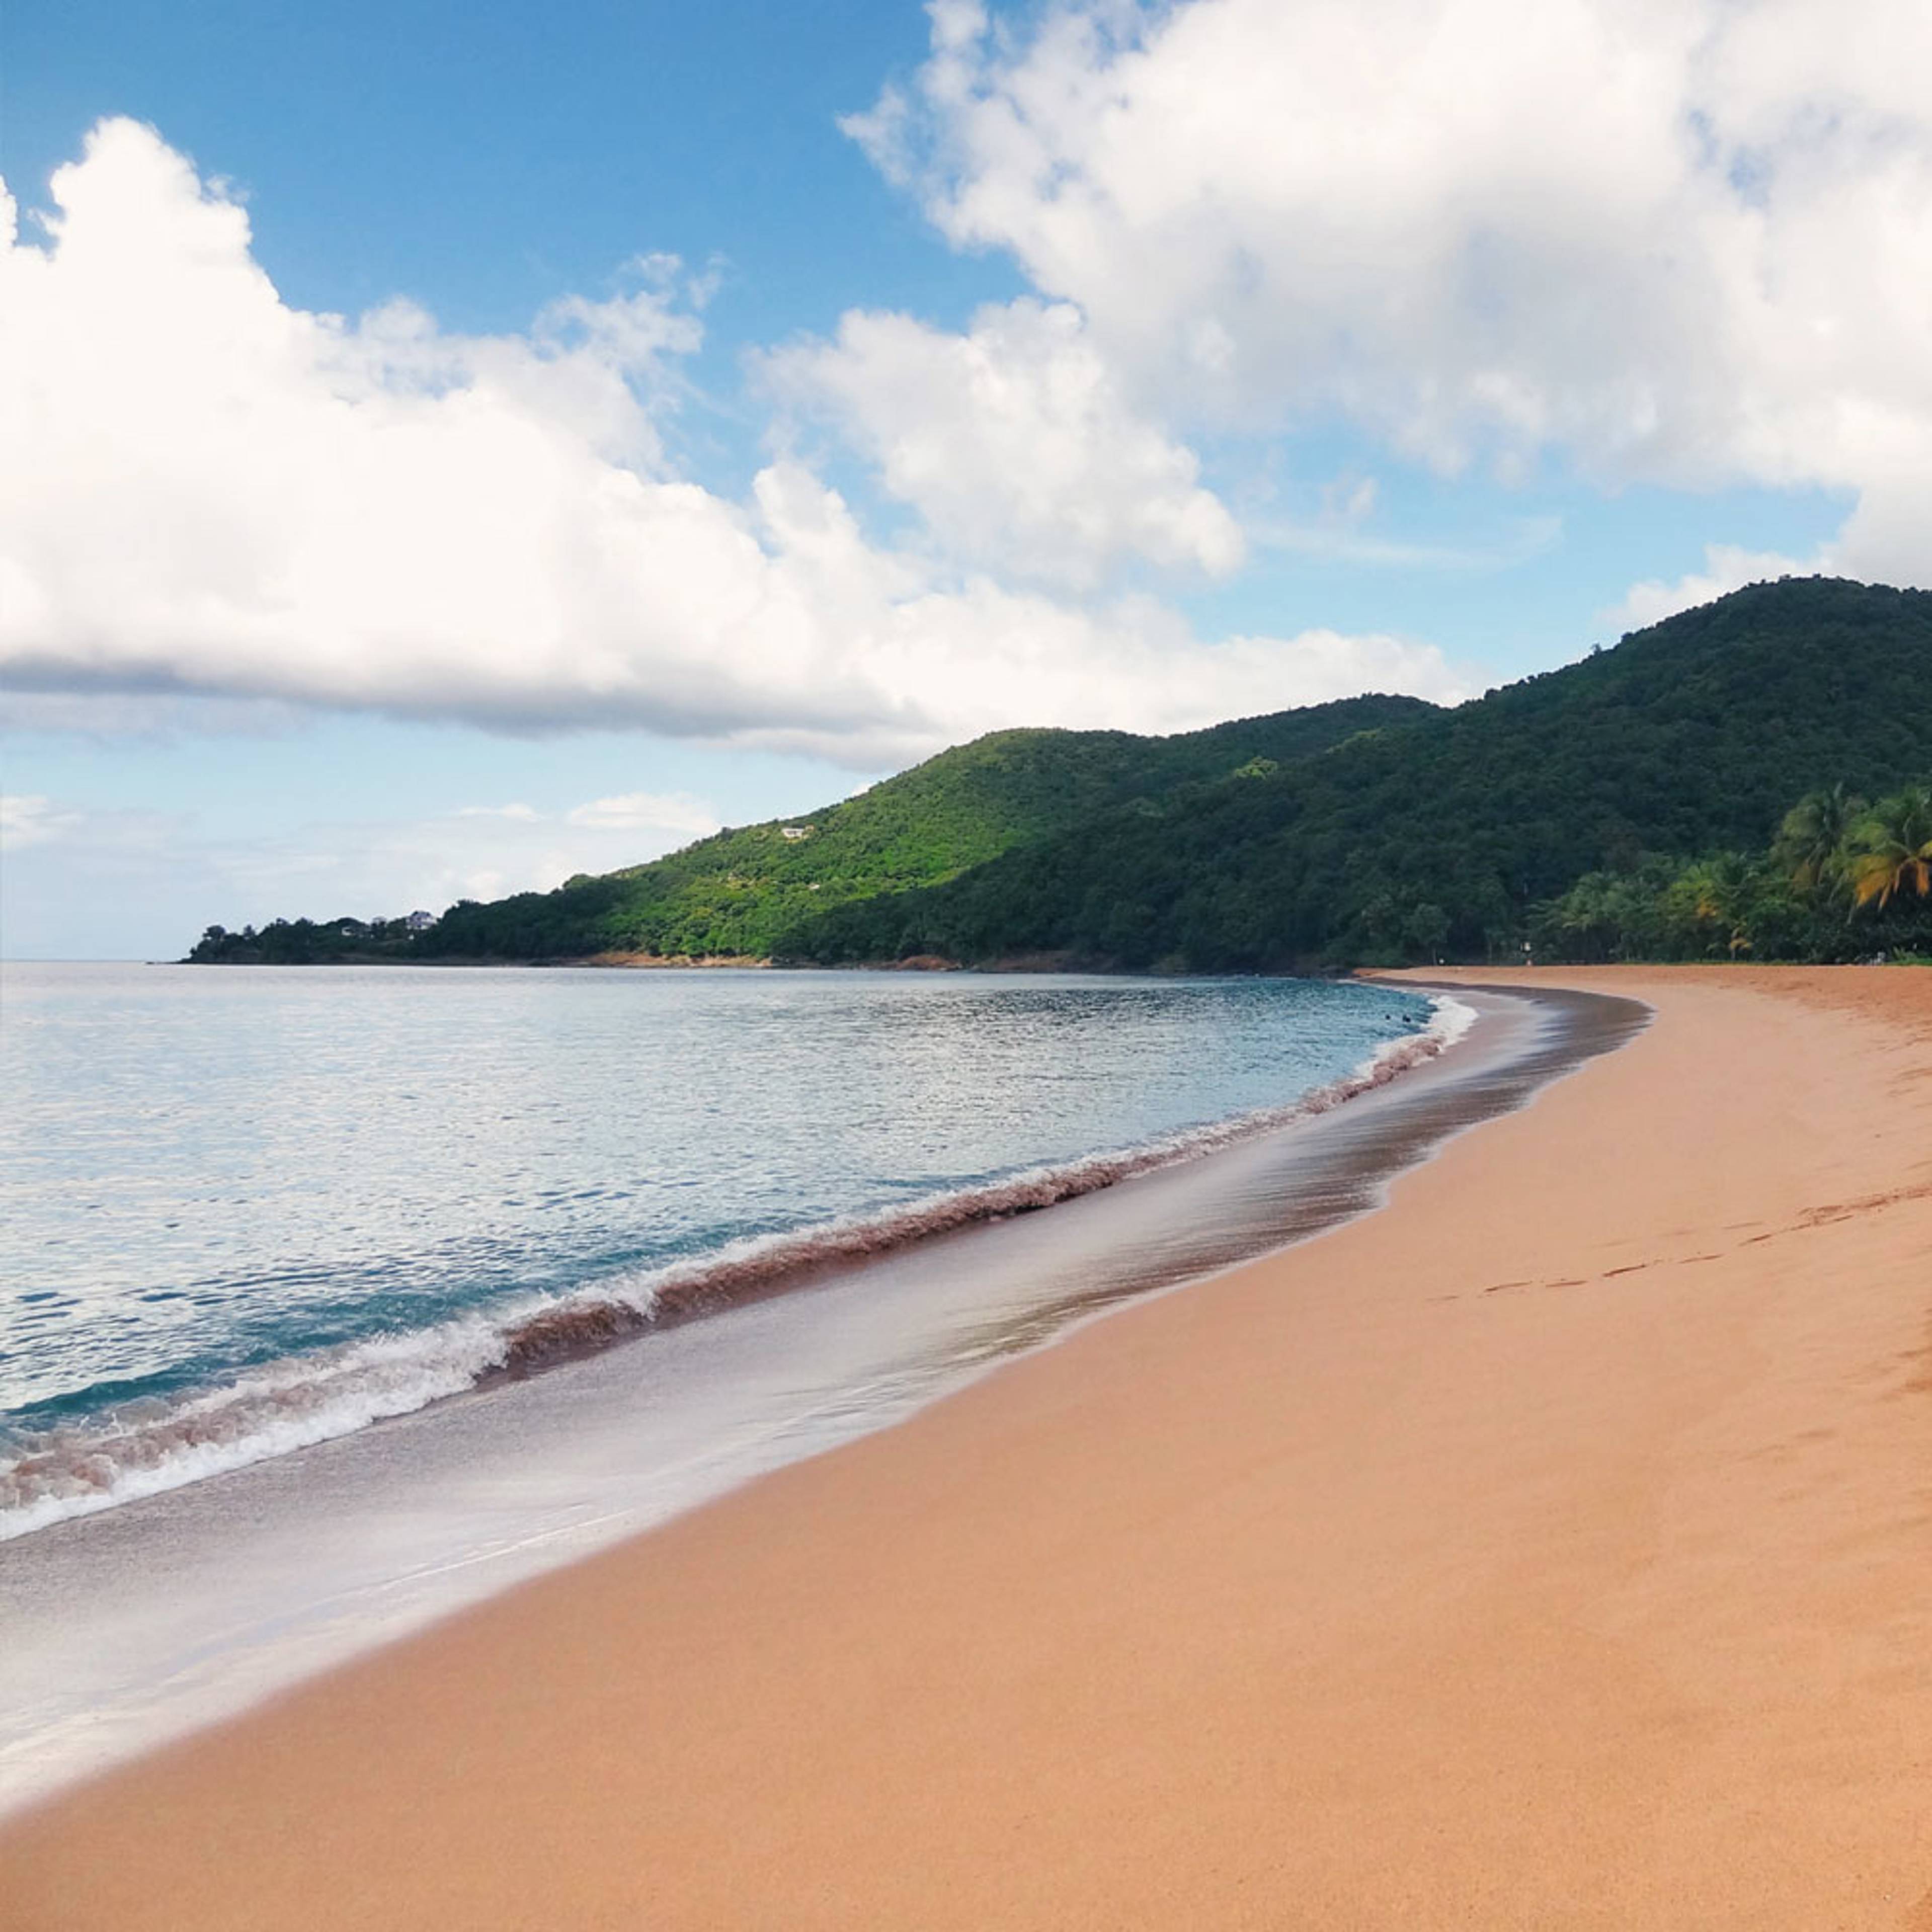 Découvrez les plus belles plages lors de votre voyage en Guadeloupe 100% sur mesure